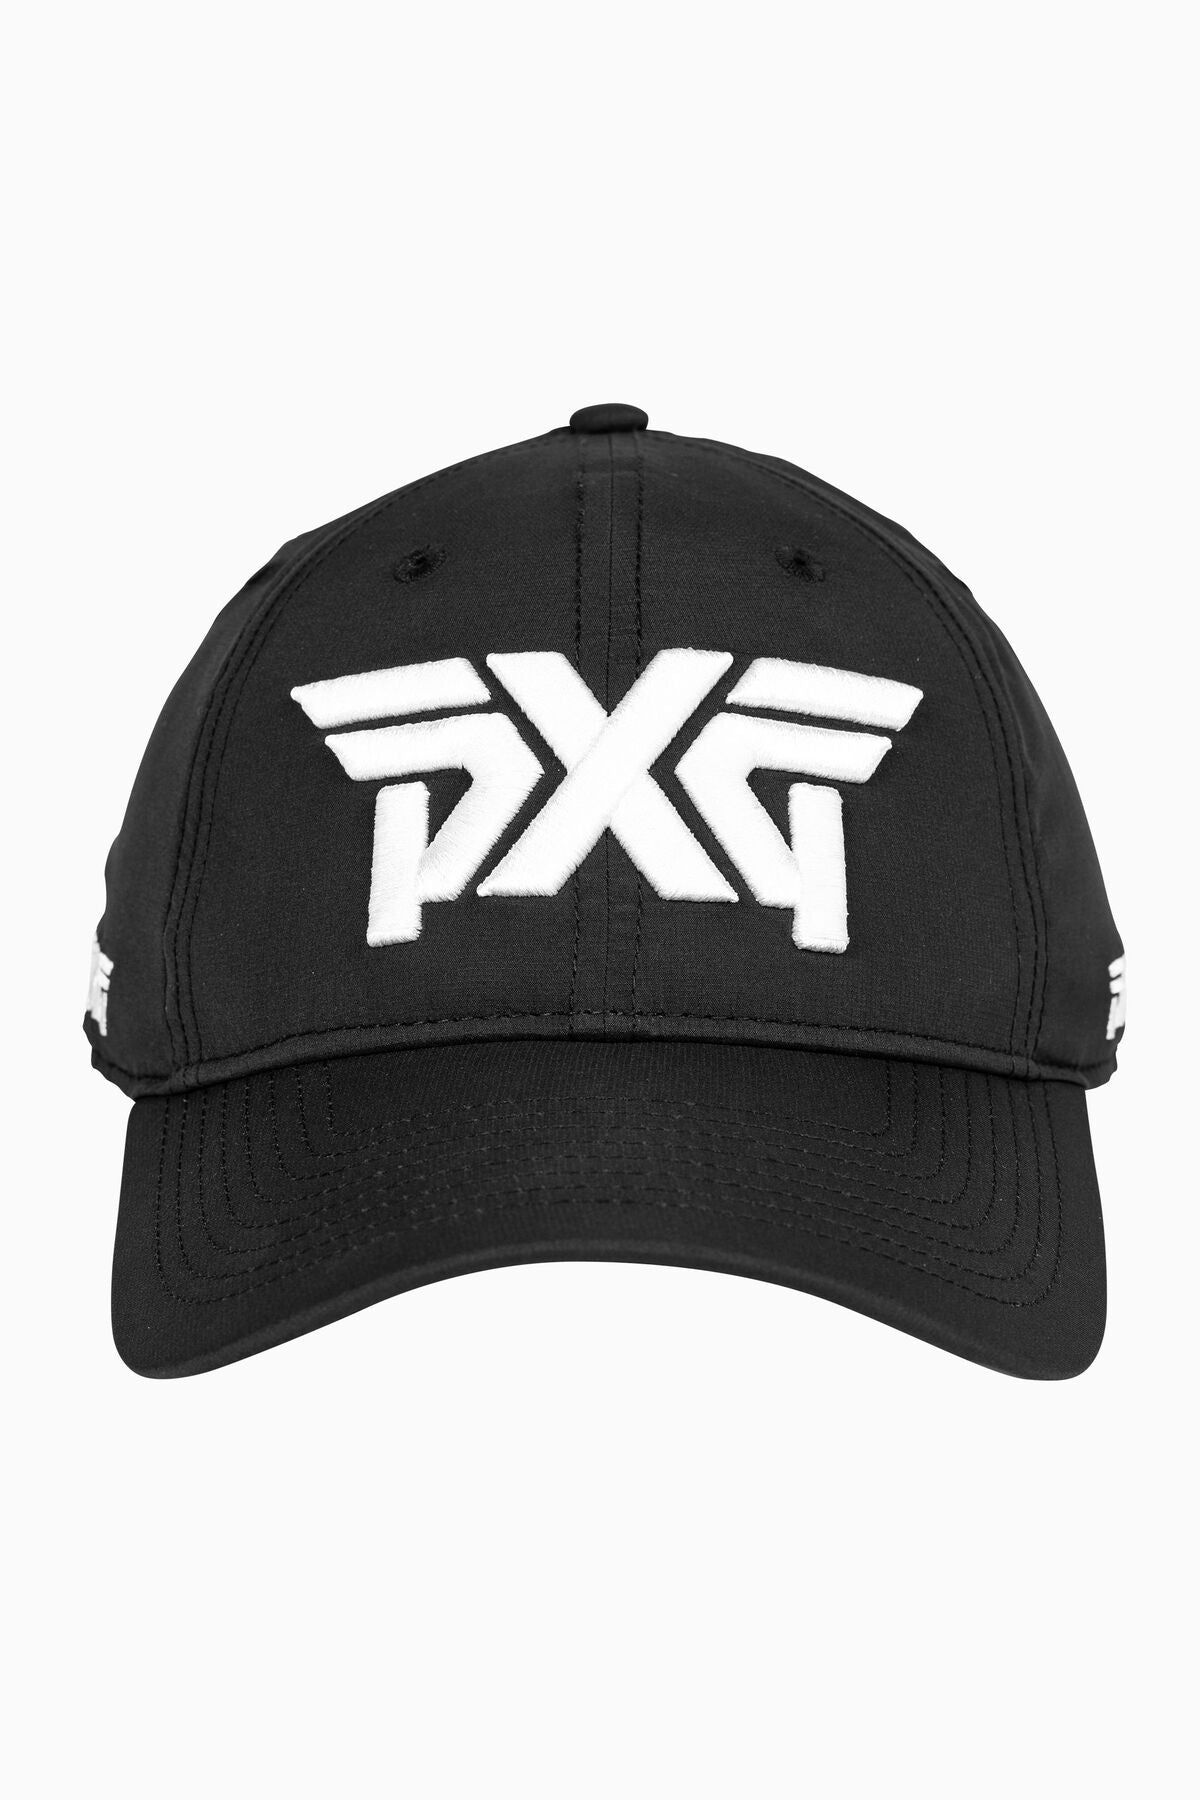 PXG Men's Lightweight Unstructured Low Crown Cap